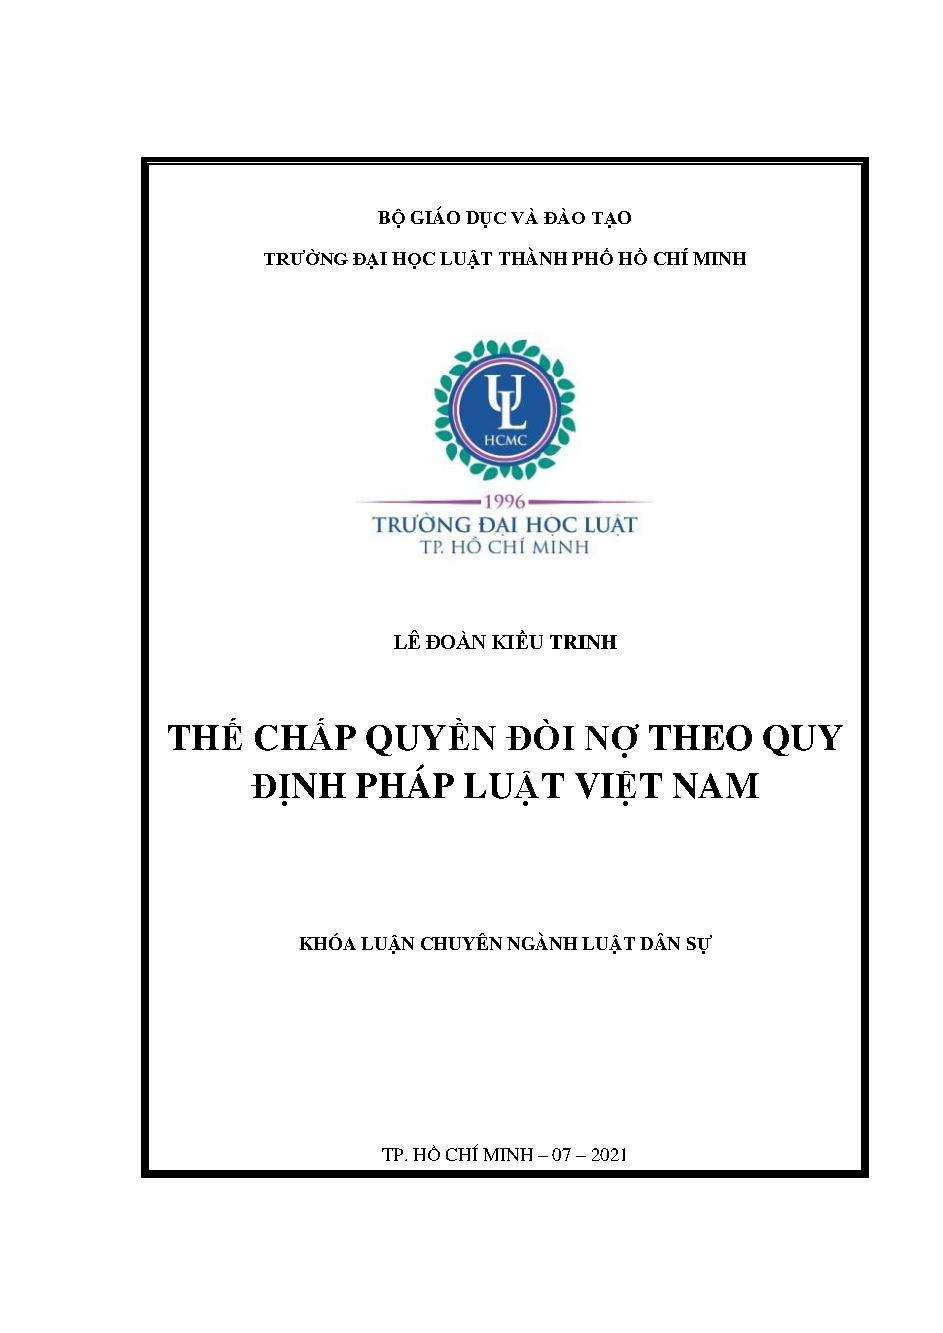 Thế chấp quyền đòi nợ theo quy định pháp luật Việt Nam